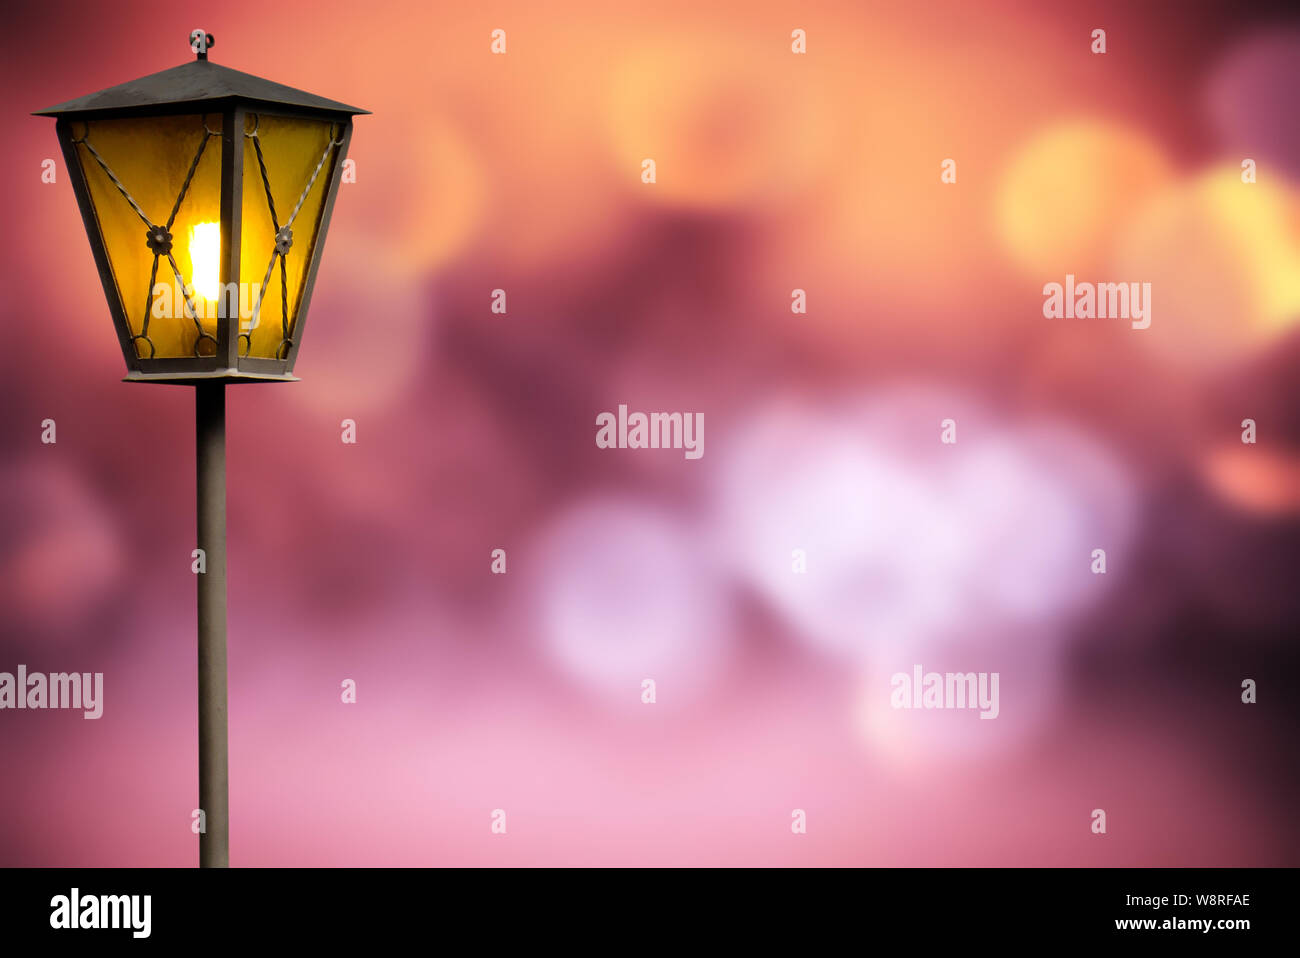 Beleuchtete Lamp Post in ein farbenfrohes Licht Nacht Szene Hintergrund mit kopieren. Stockfoto